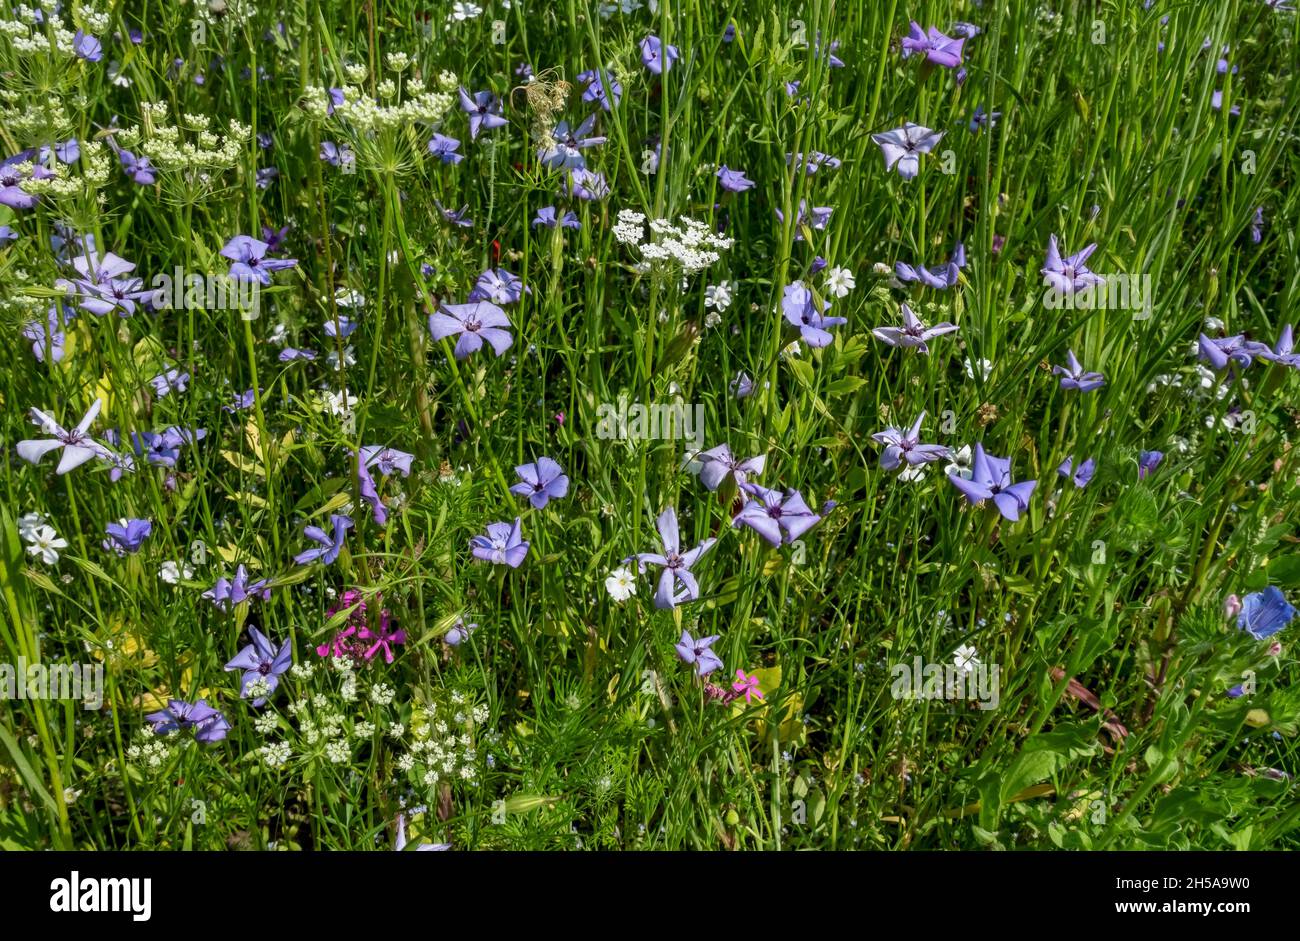 Primo piano di fiori selvatici bianchi e blu in un giardino di confine in estate Inghilterra Regno Unito GB Gran Bretagna Foto Stock